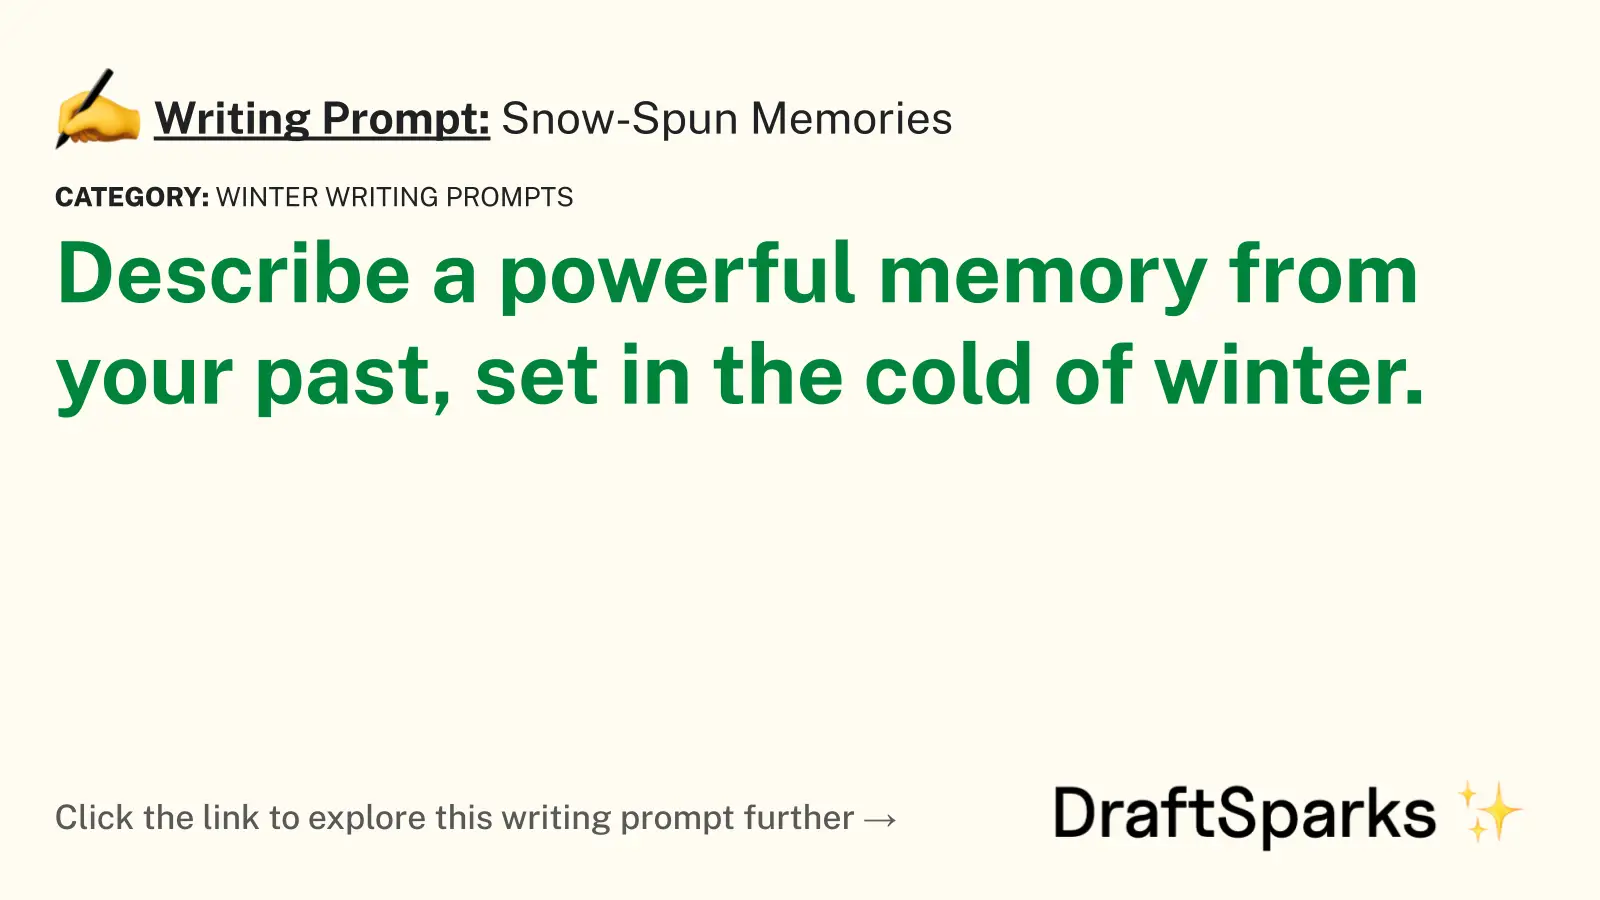 Snow-Spun Memories